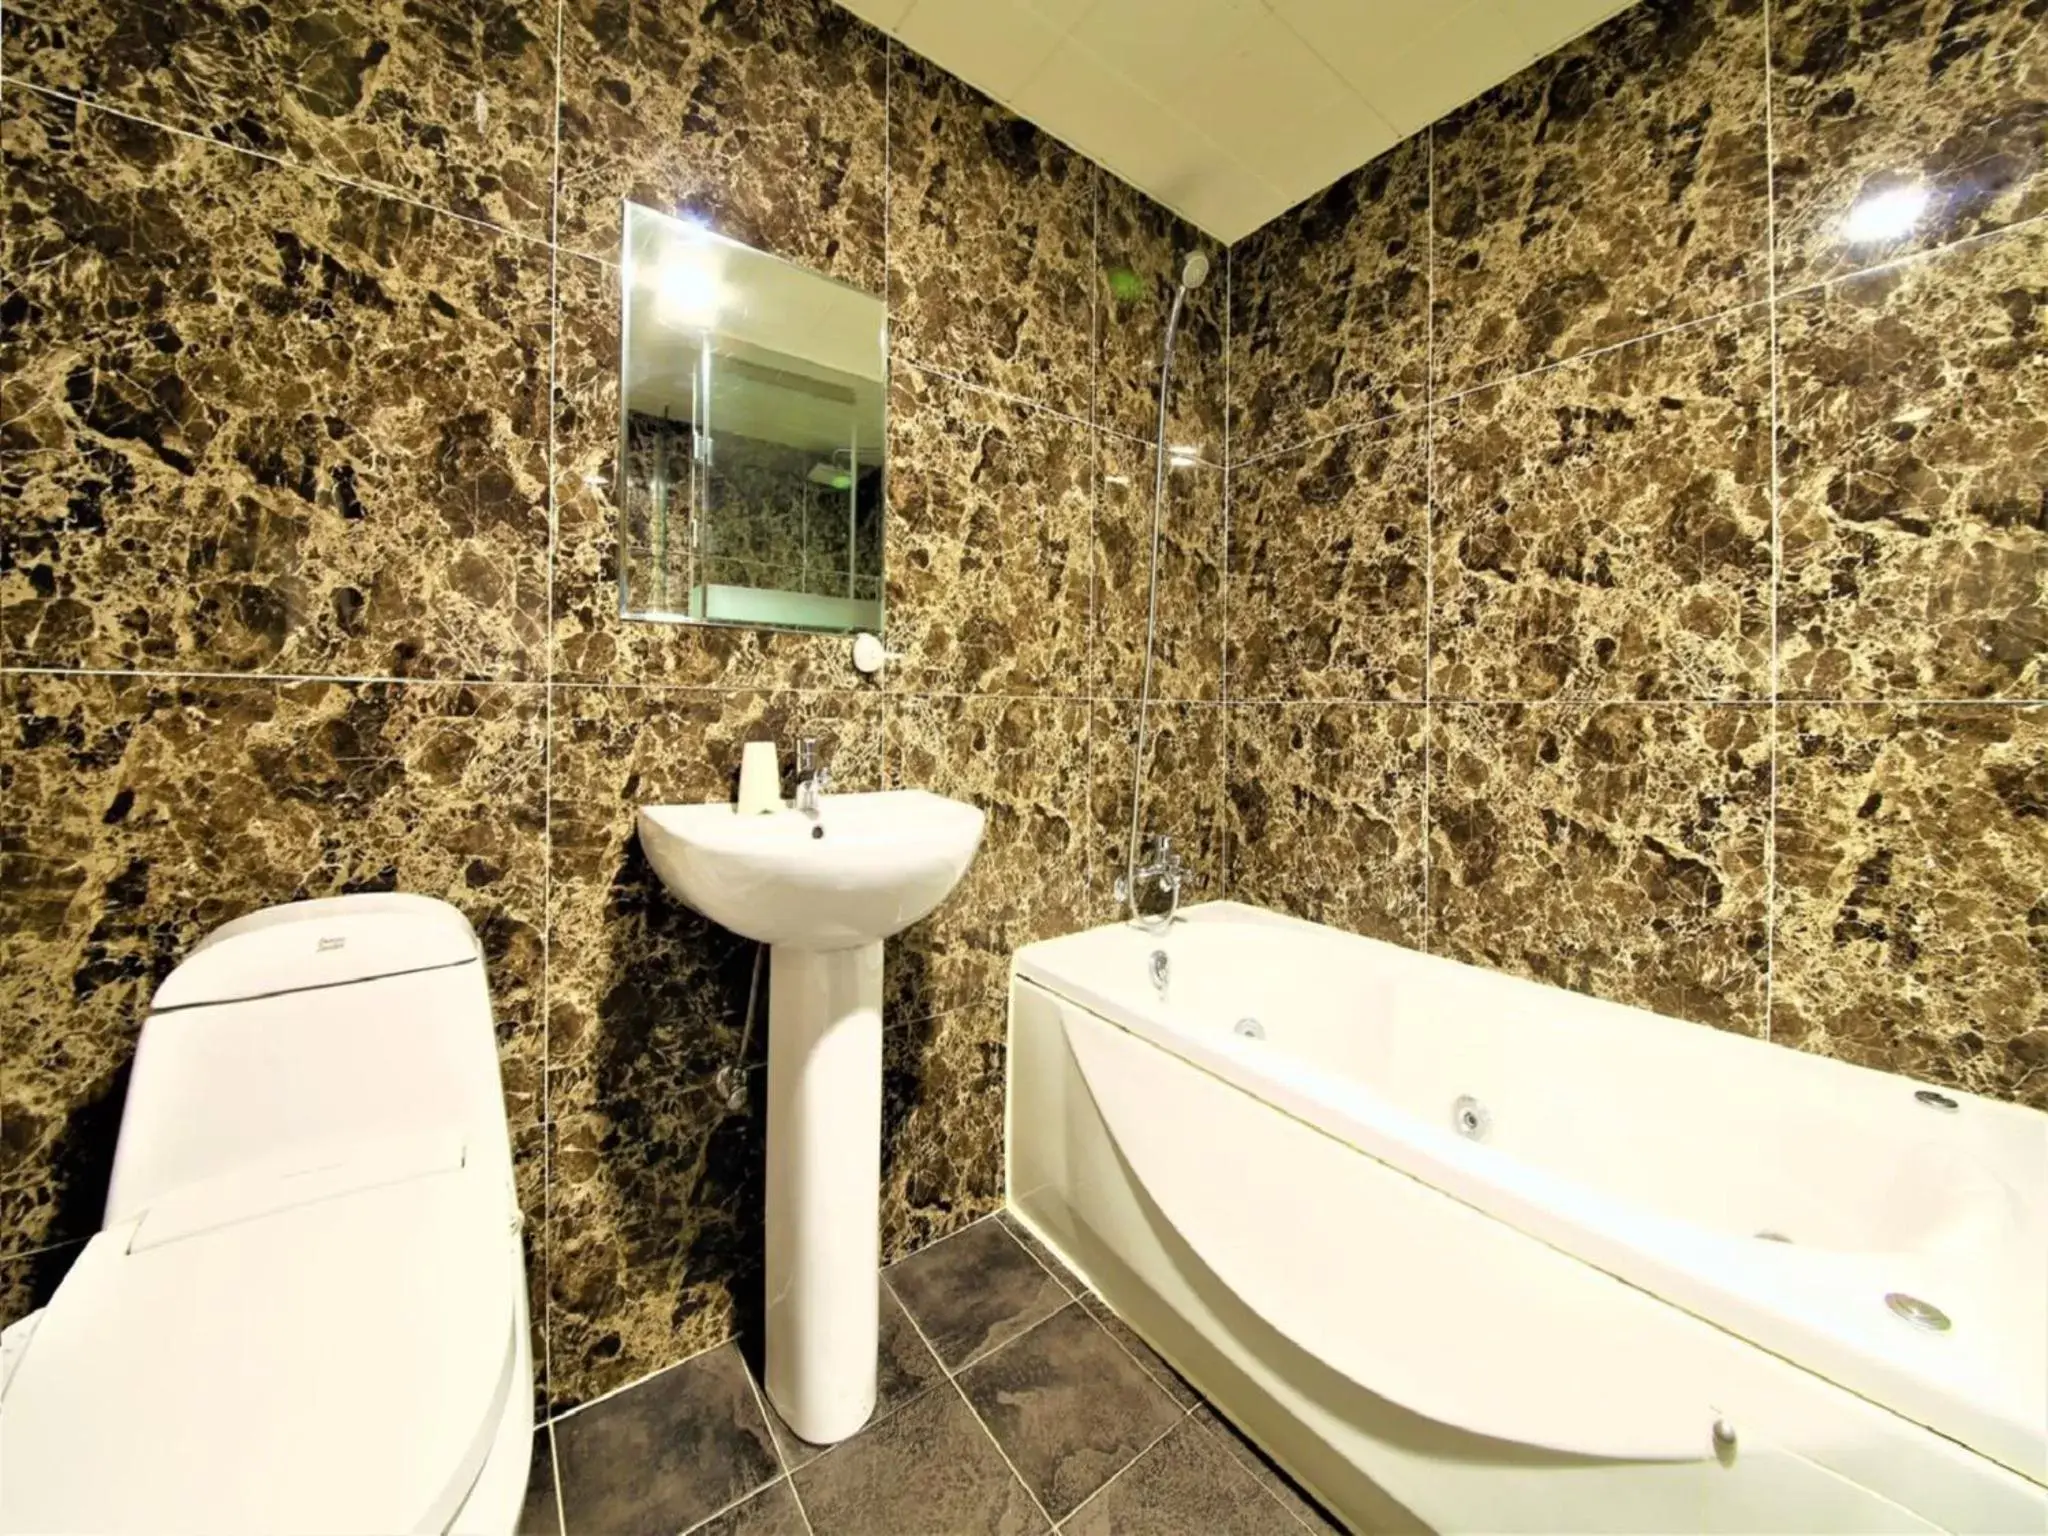 Toilet, Bathroom in Elysee Hotel